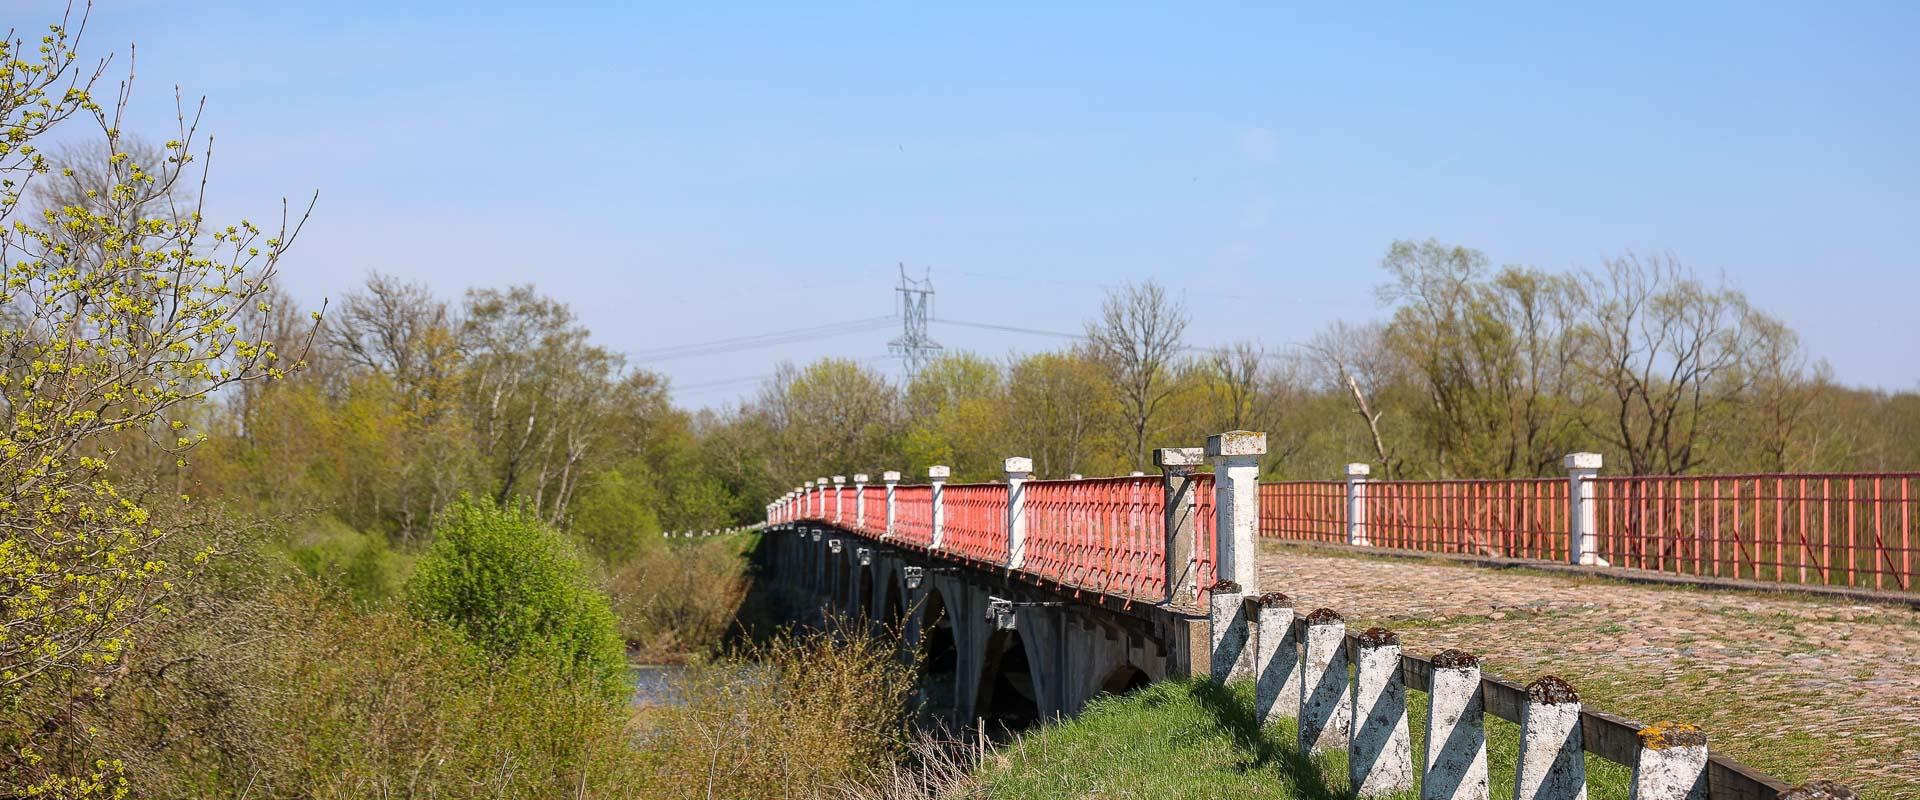 Kasari jõgi ja ajalooline sild